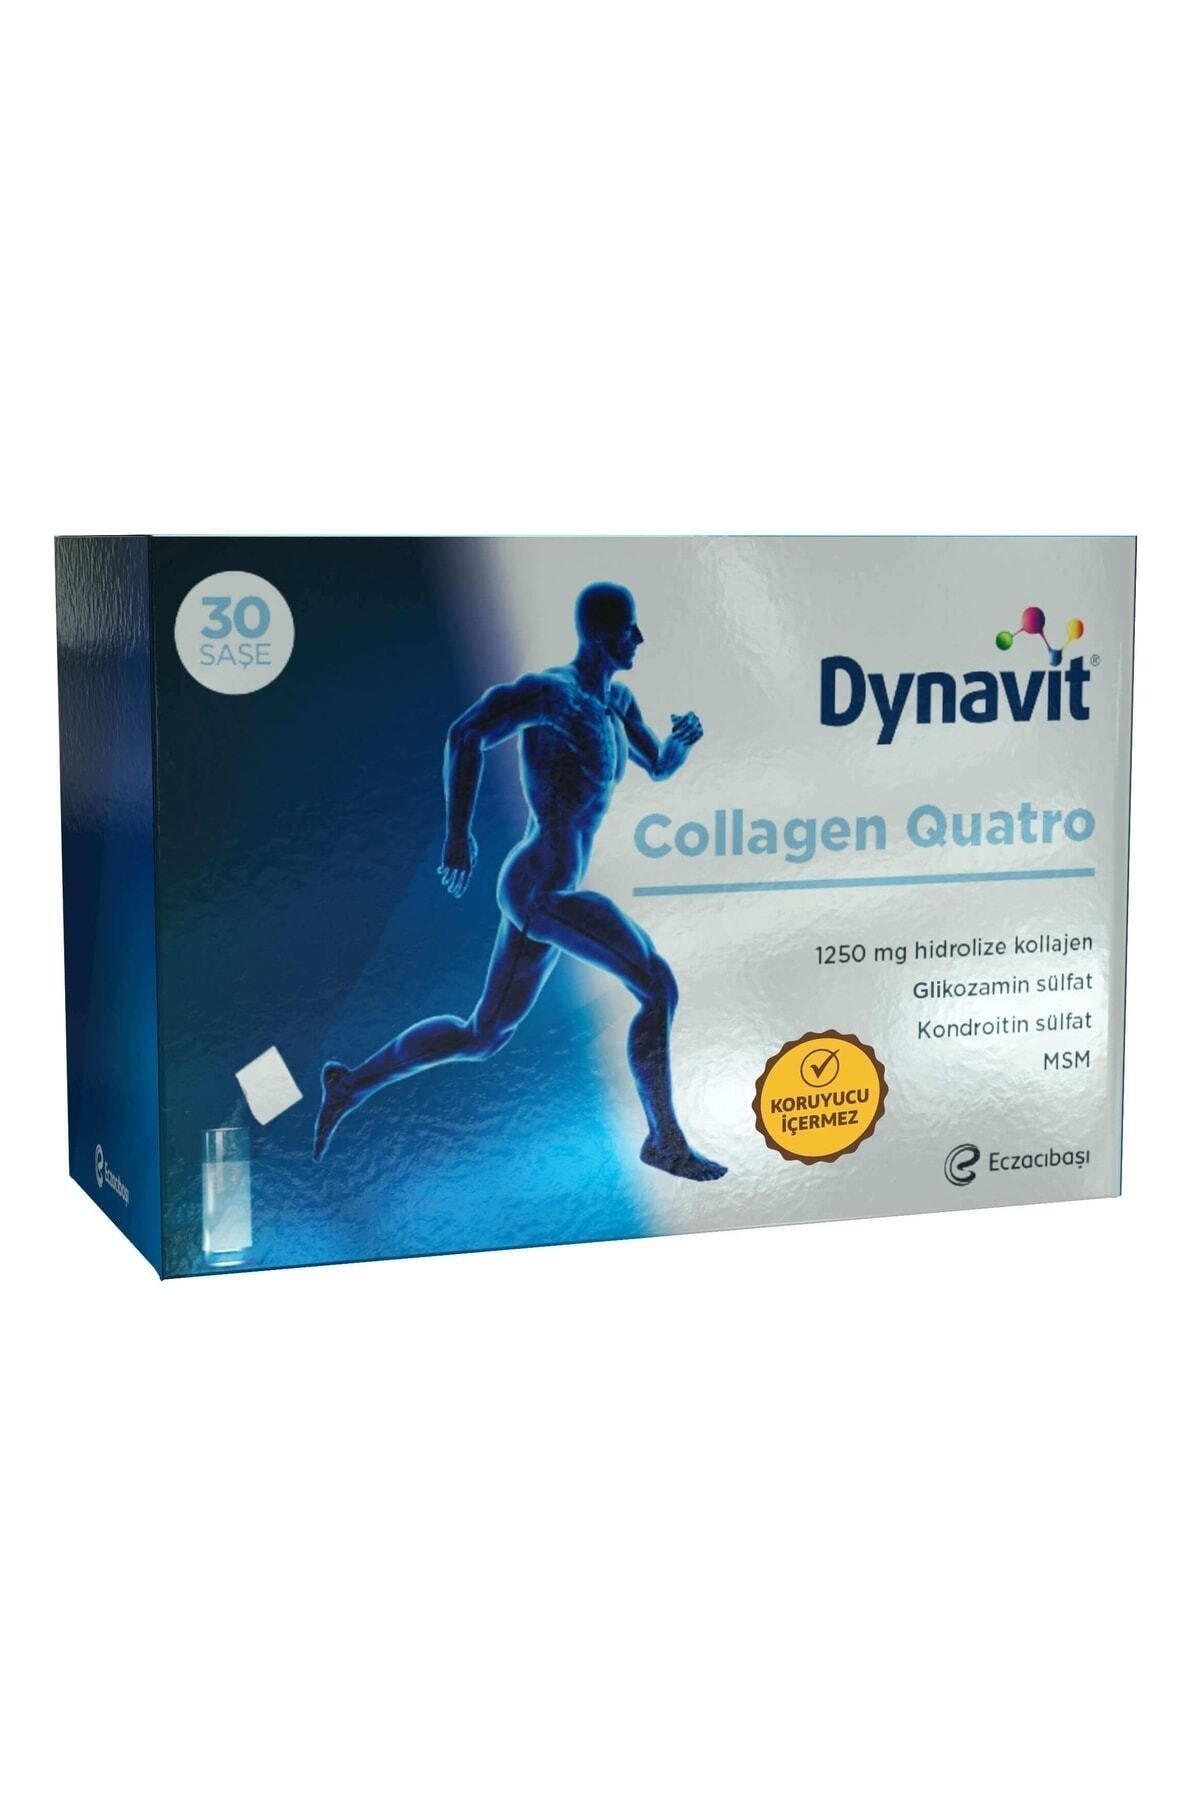 Eczacıbaşı Dynavit Collagen Quatro Saşe 30 Saşe